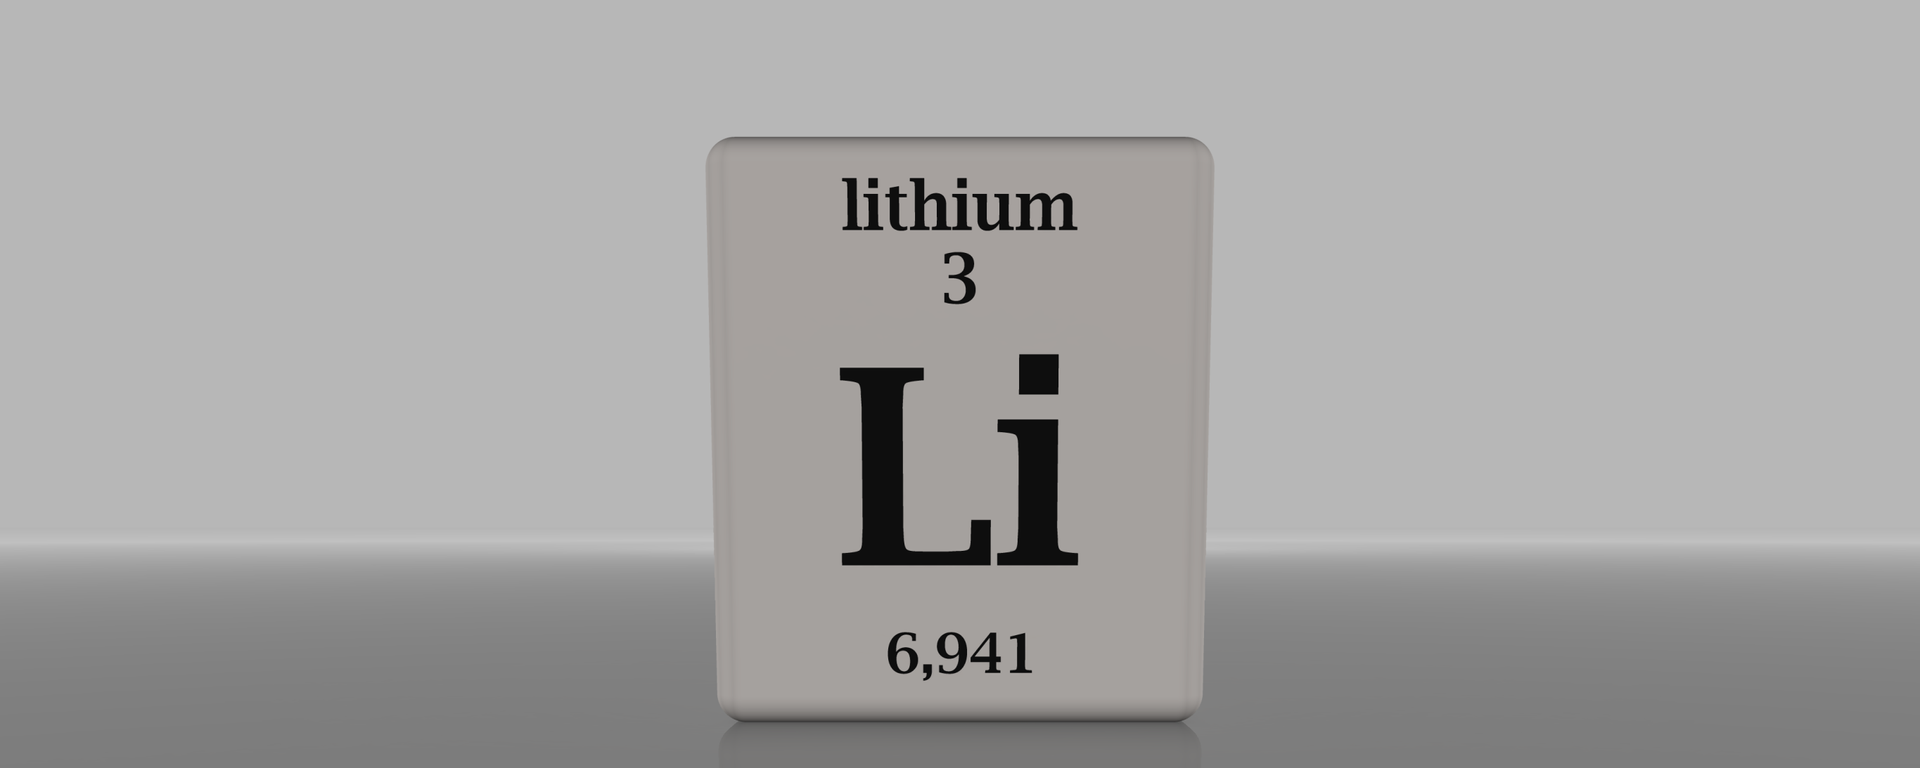 Litio en la tabla periódica de los elementos - Sputnik Mundo, 1920, 26.03.2021